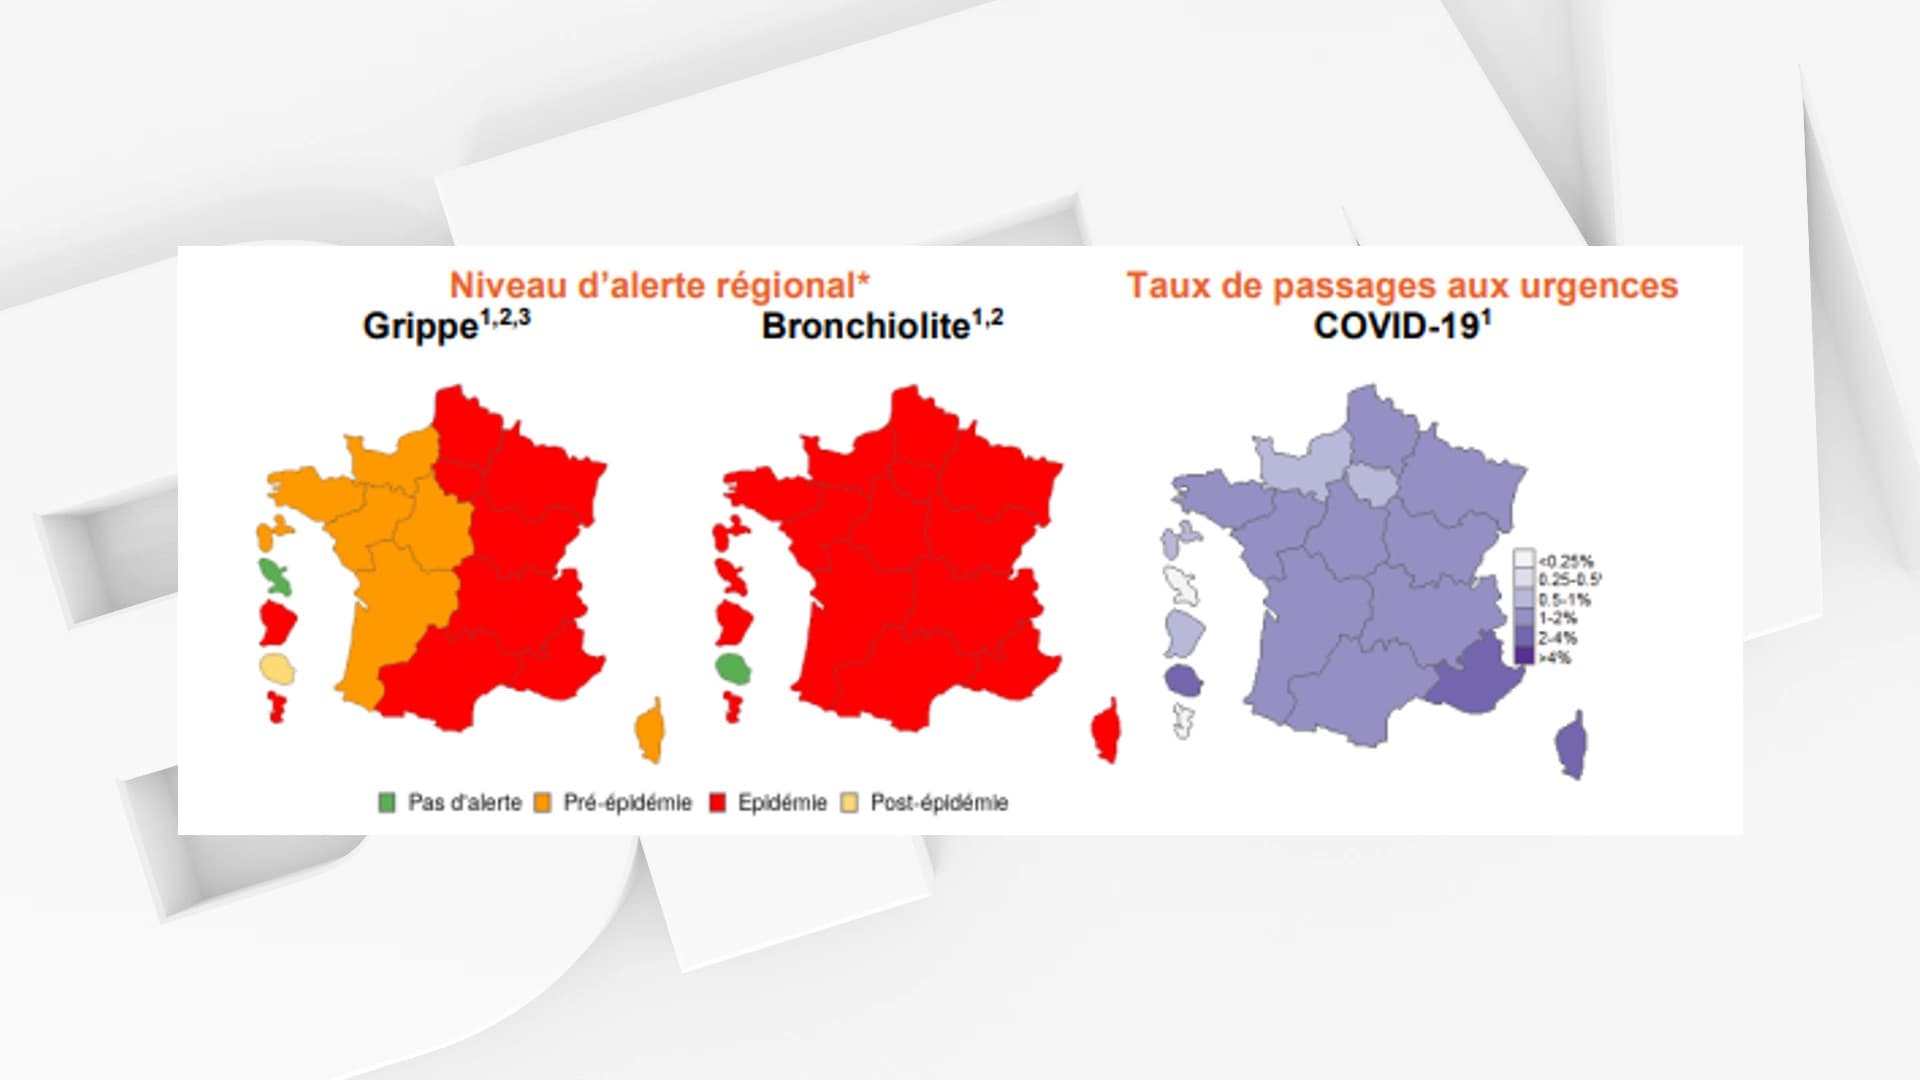 Ile-de-France i Hautes-de-France, podobnie jak 5 innych regionów, wchodzą w fazę epidemii